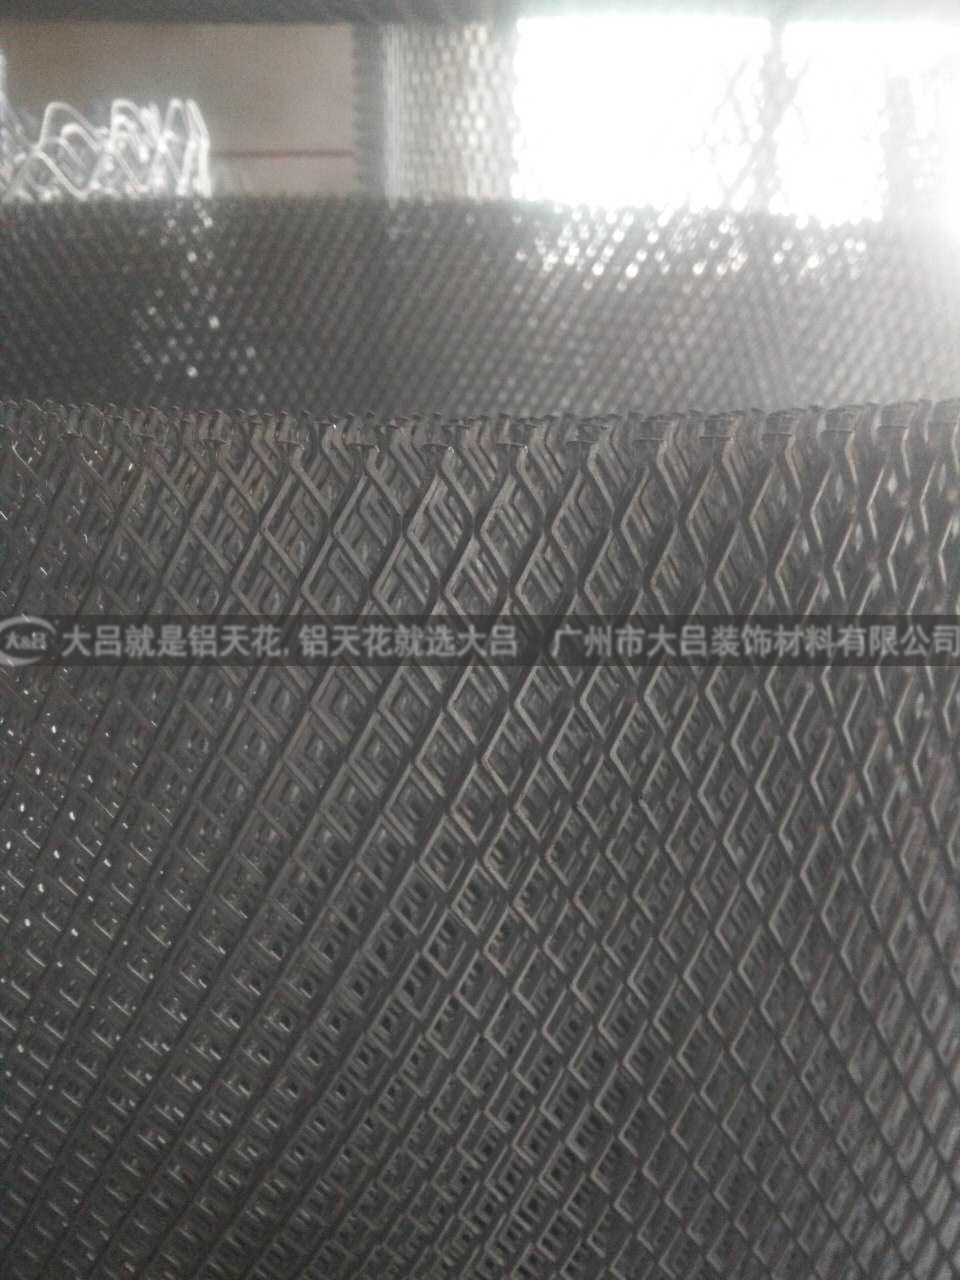 铝拉网 网格天花厂家供应铝拉网 网格天花